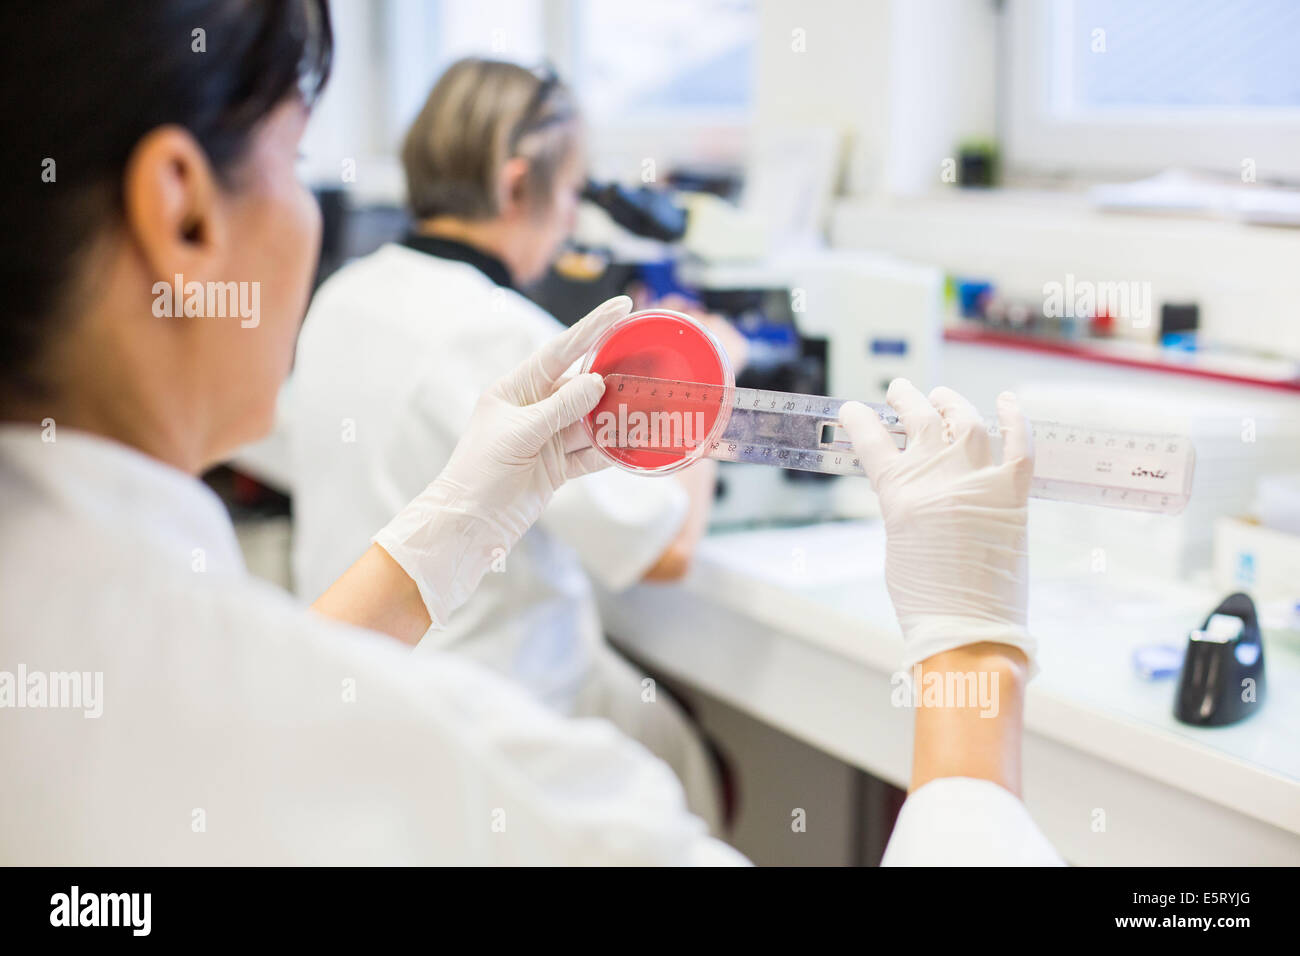 Tecnico femminile la misurazione di una coltura batterica in una capsula di petri in un laboratorio di analisi mediche Foto Stock